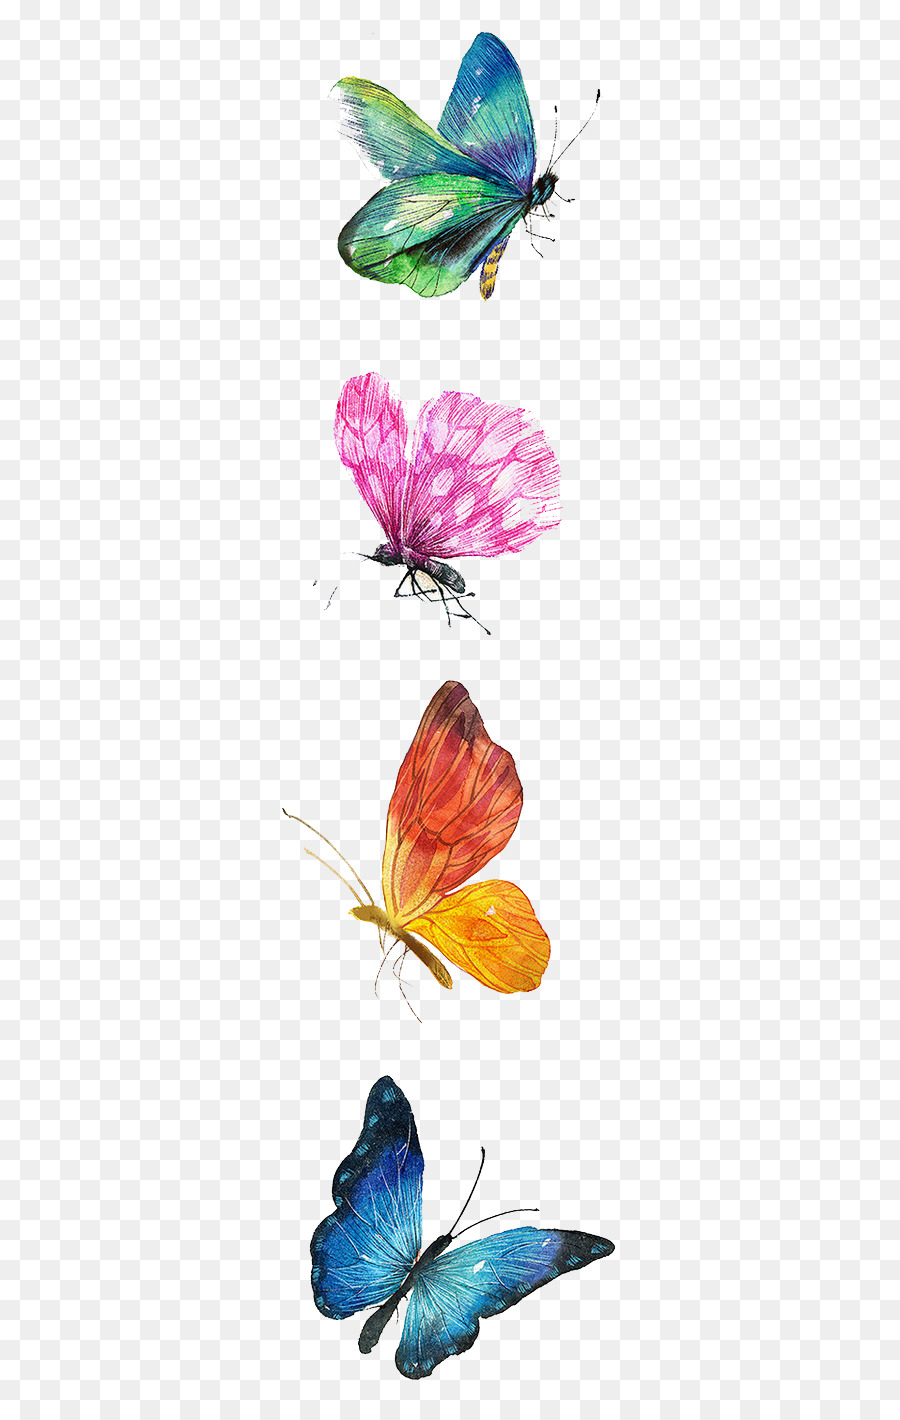 Con bướm vẽ bằng màu nước